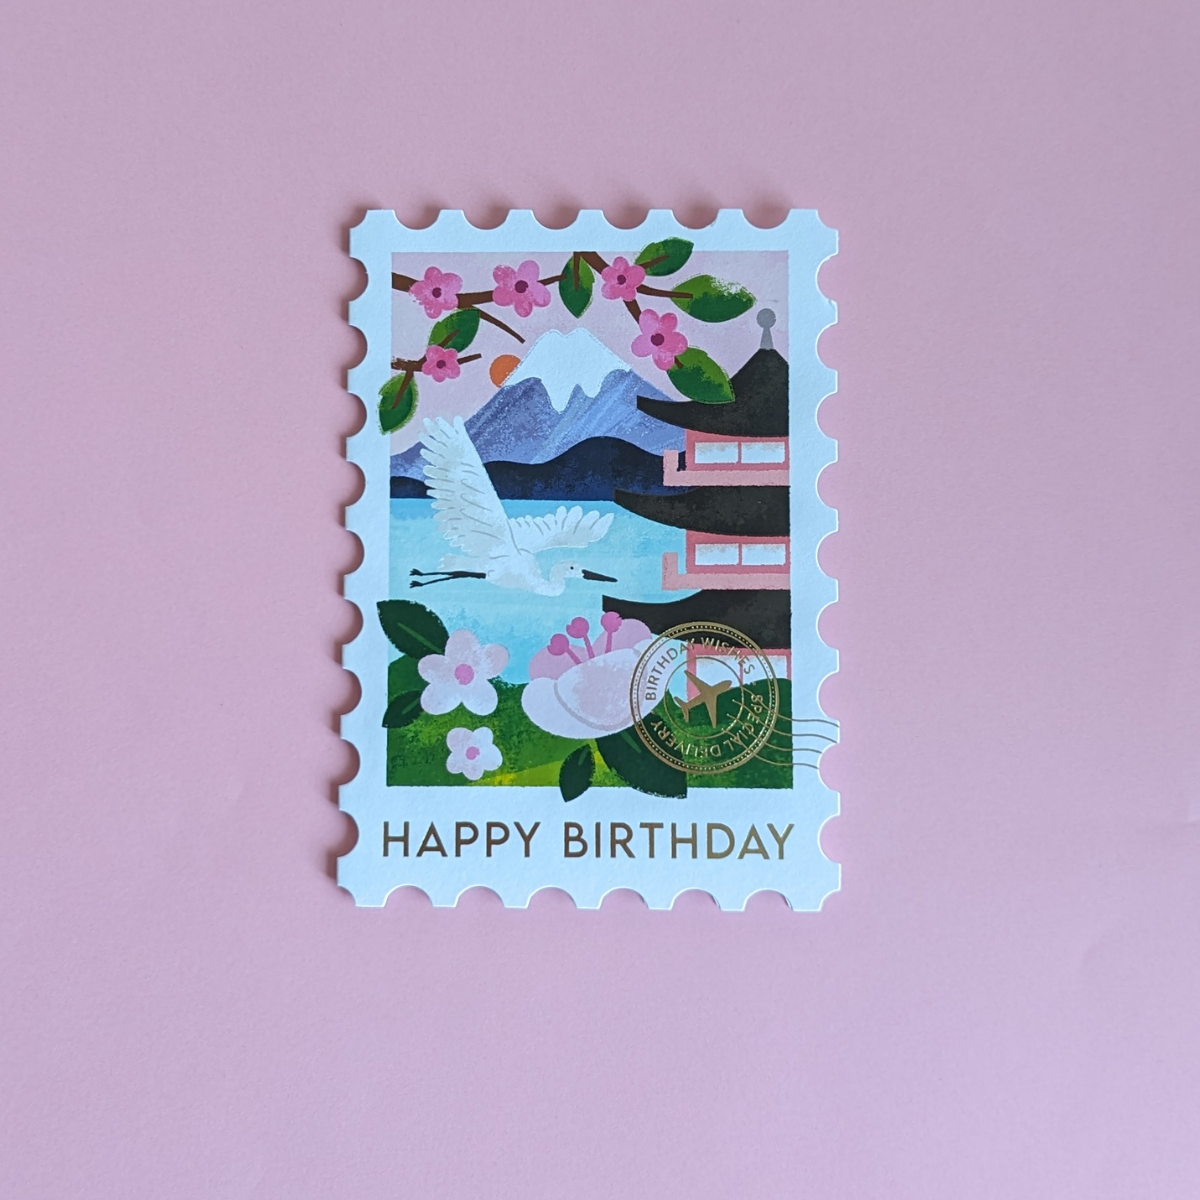 Cette carte en forme de timbre arbore une superbe illustration du Mont Fuji. Le cachet doré de la poste affiche les mots « Birthday Wishes », ce qui ajoute une touche d’authenticité.